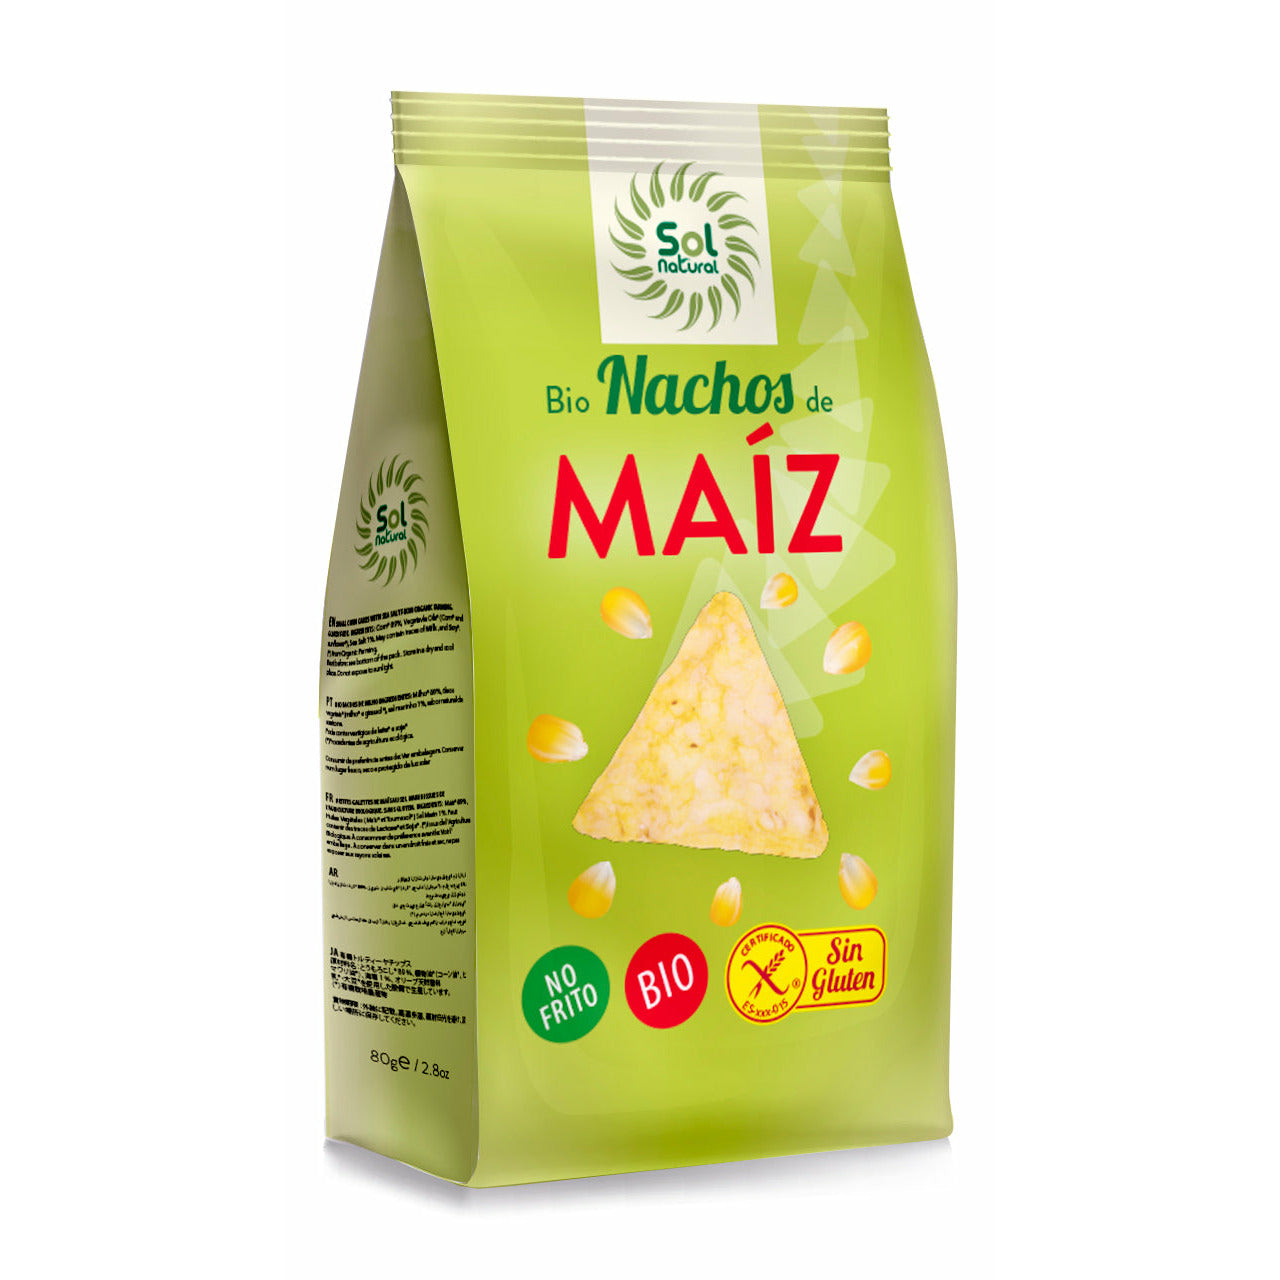 Nachos de Maiz No Fritos Bio 80 gr | Sol Natural - Dietetica Ferrer